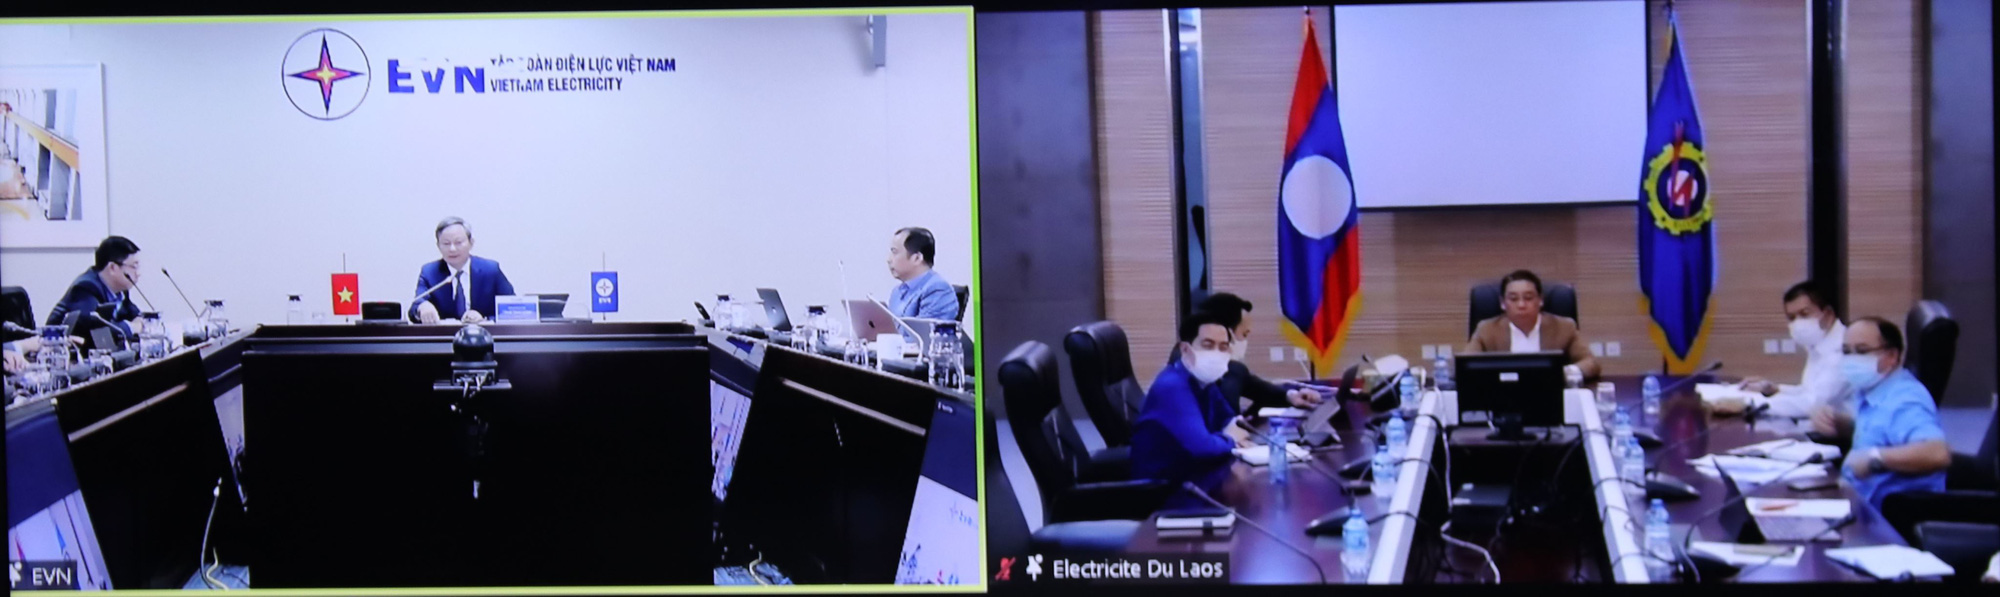 Tập đoàn điện lực Việt Nam (EVN) mua điện từ Lào - Ảnh 2.